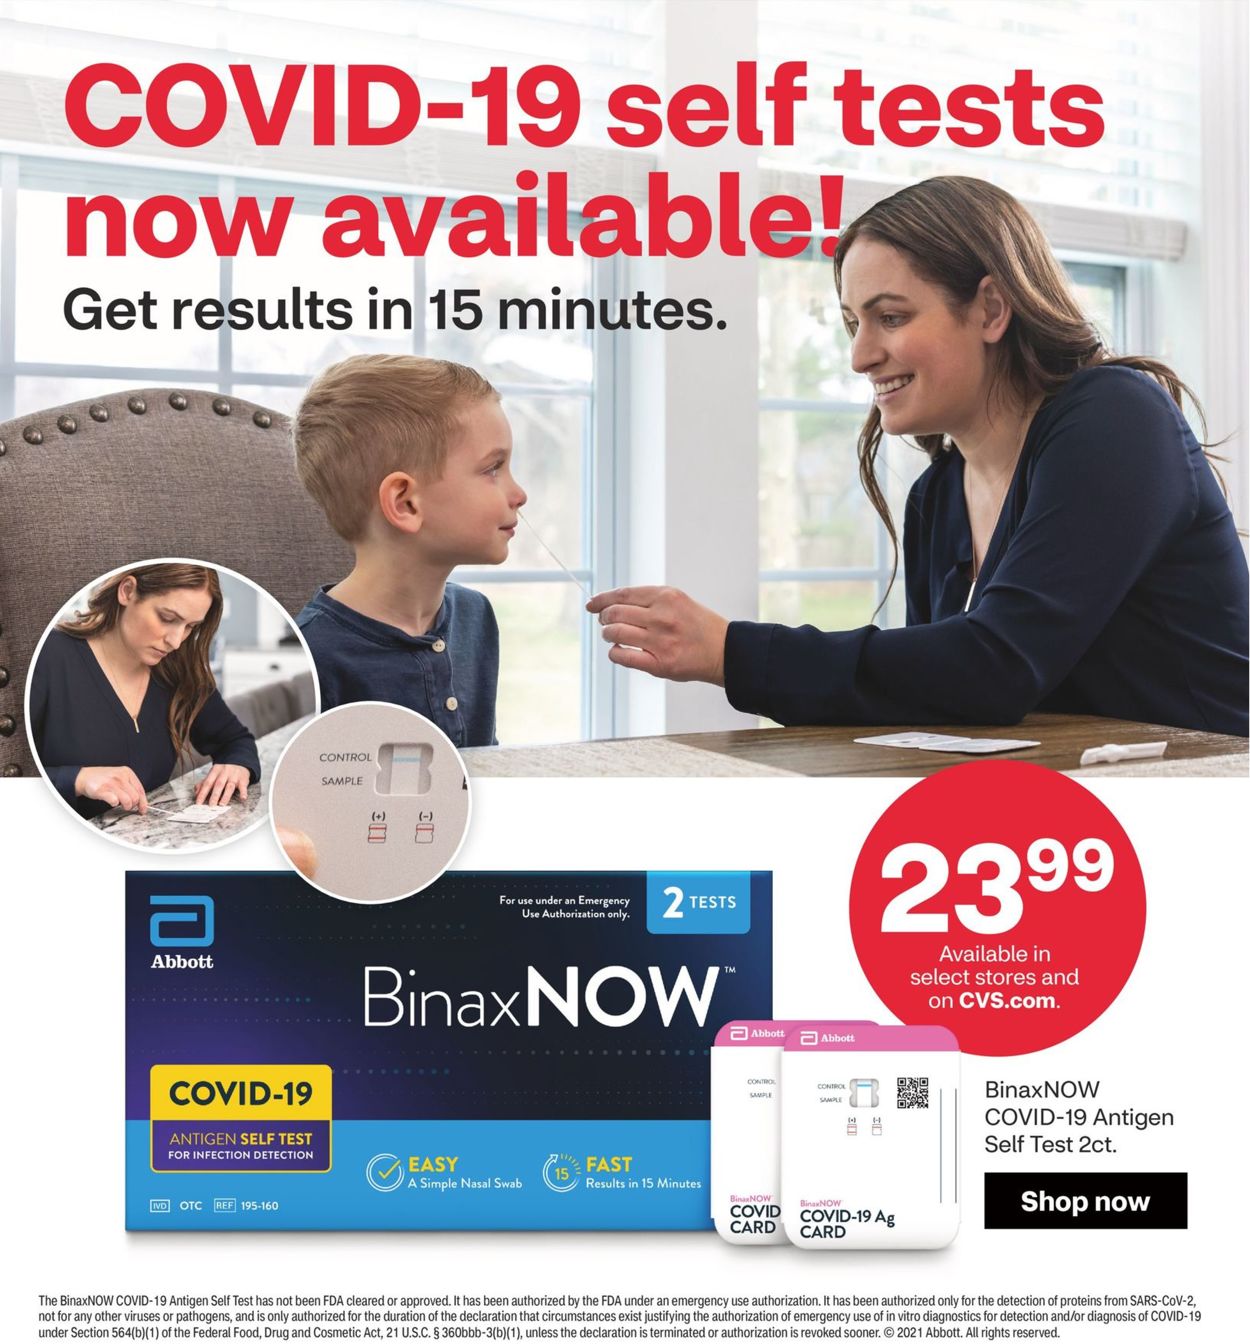 CVS Pharmacy Ad from 04/25/2021